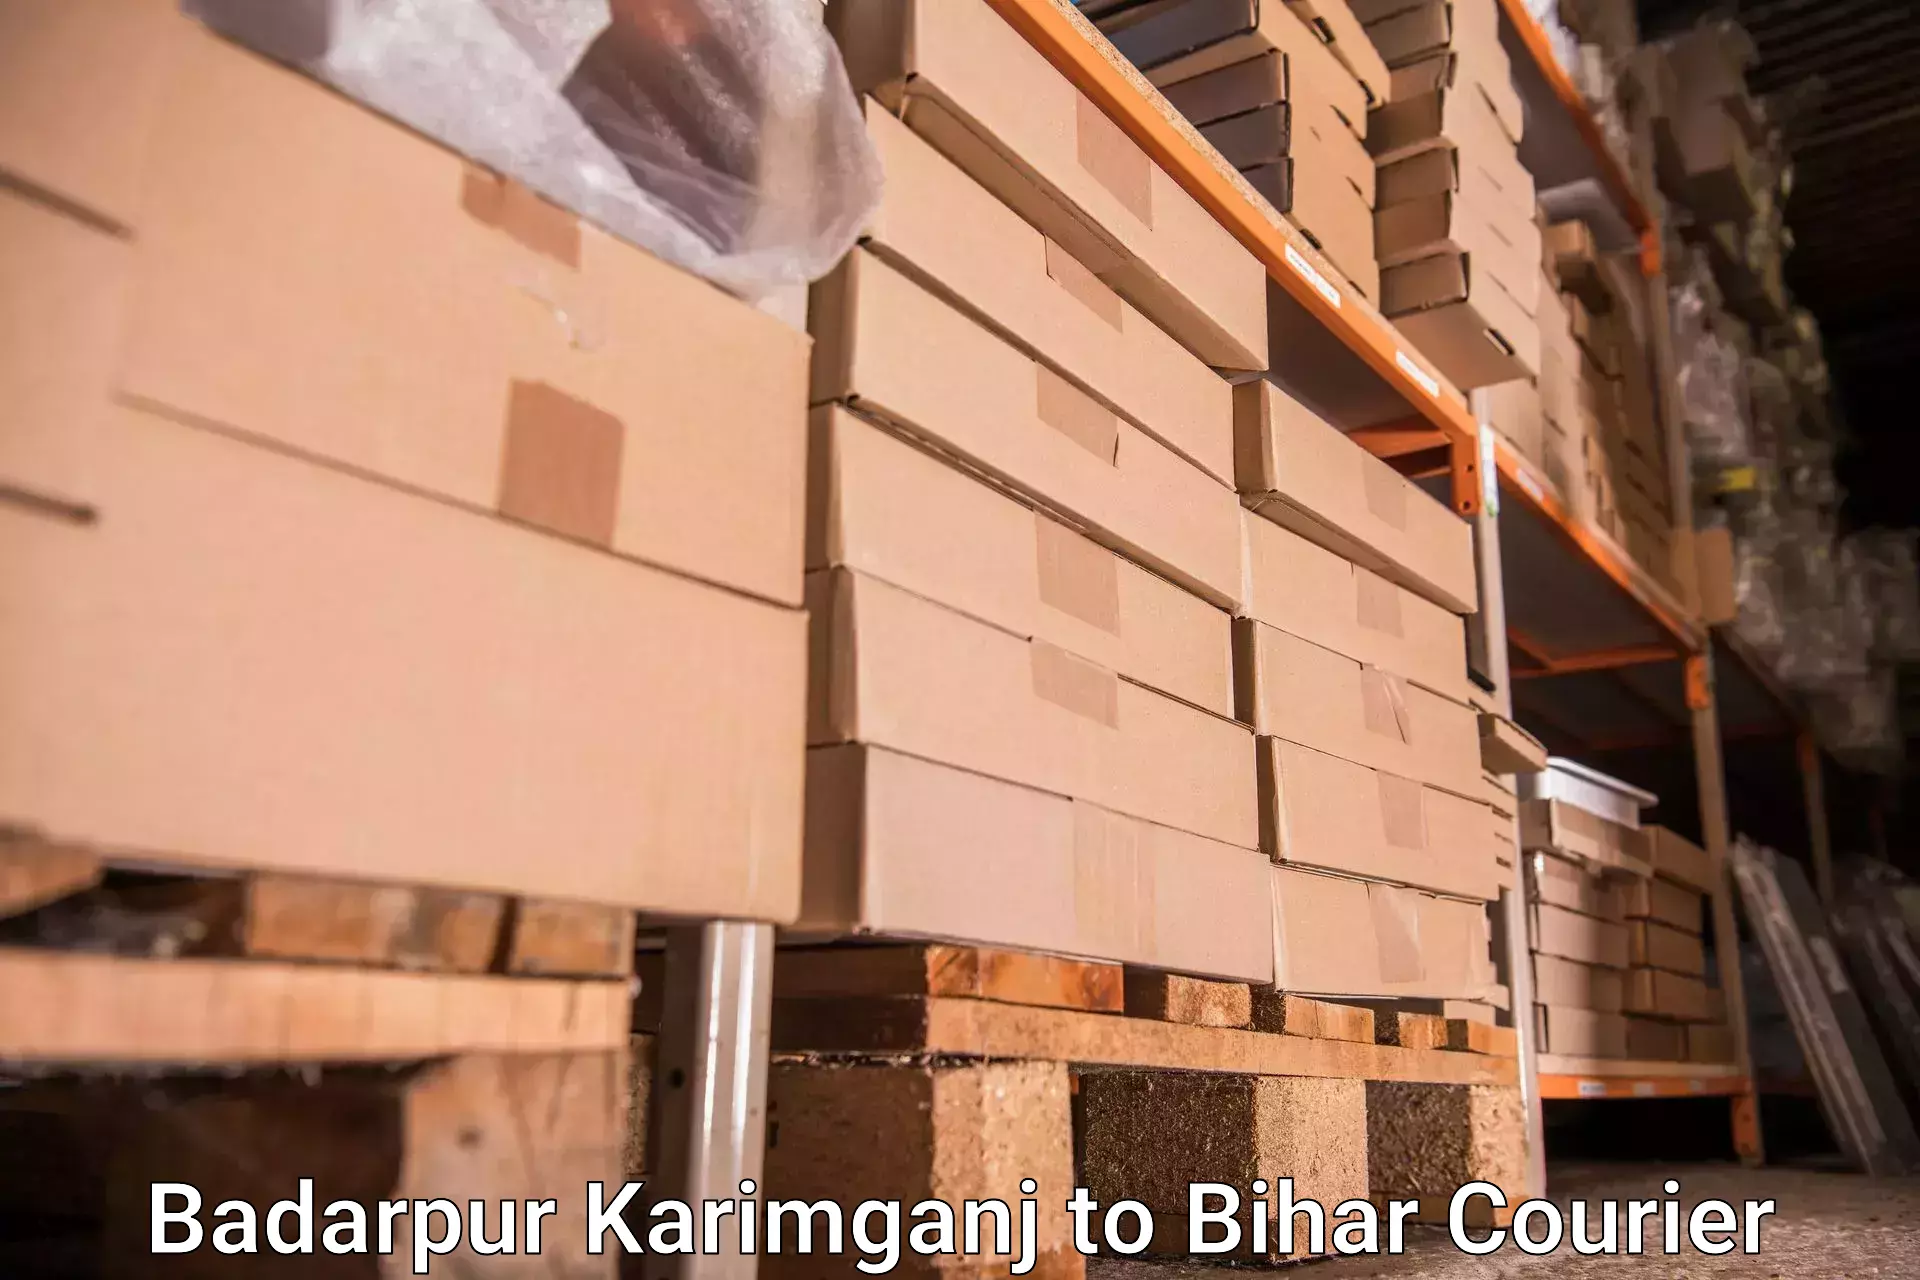 Baggage delivery planning in Badarpur Karimganj to Jevargi